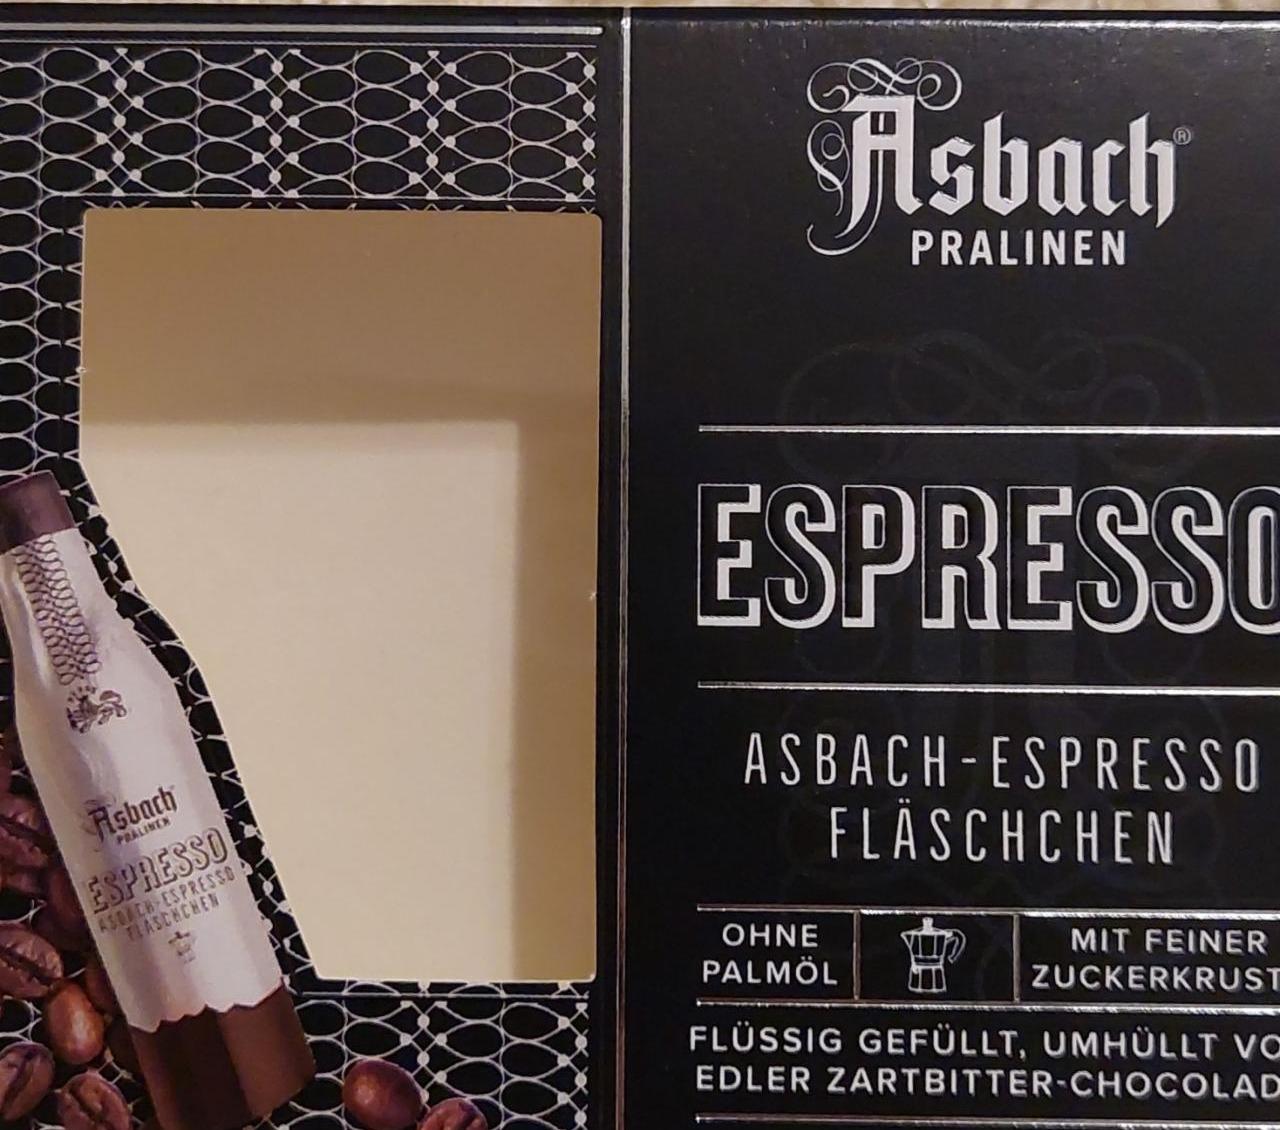 Fotografie - Asbach espresso fläschchen